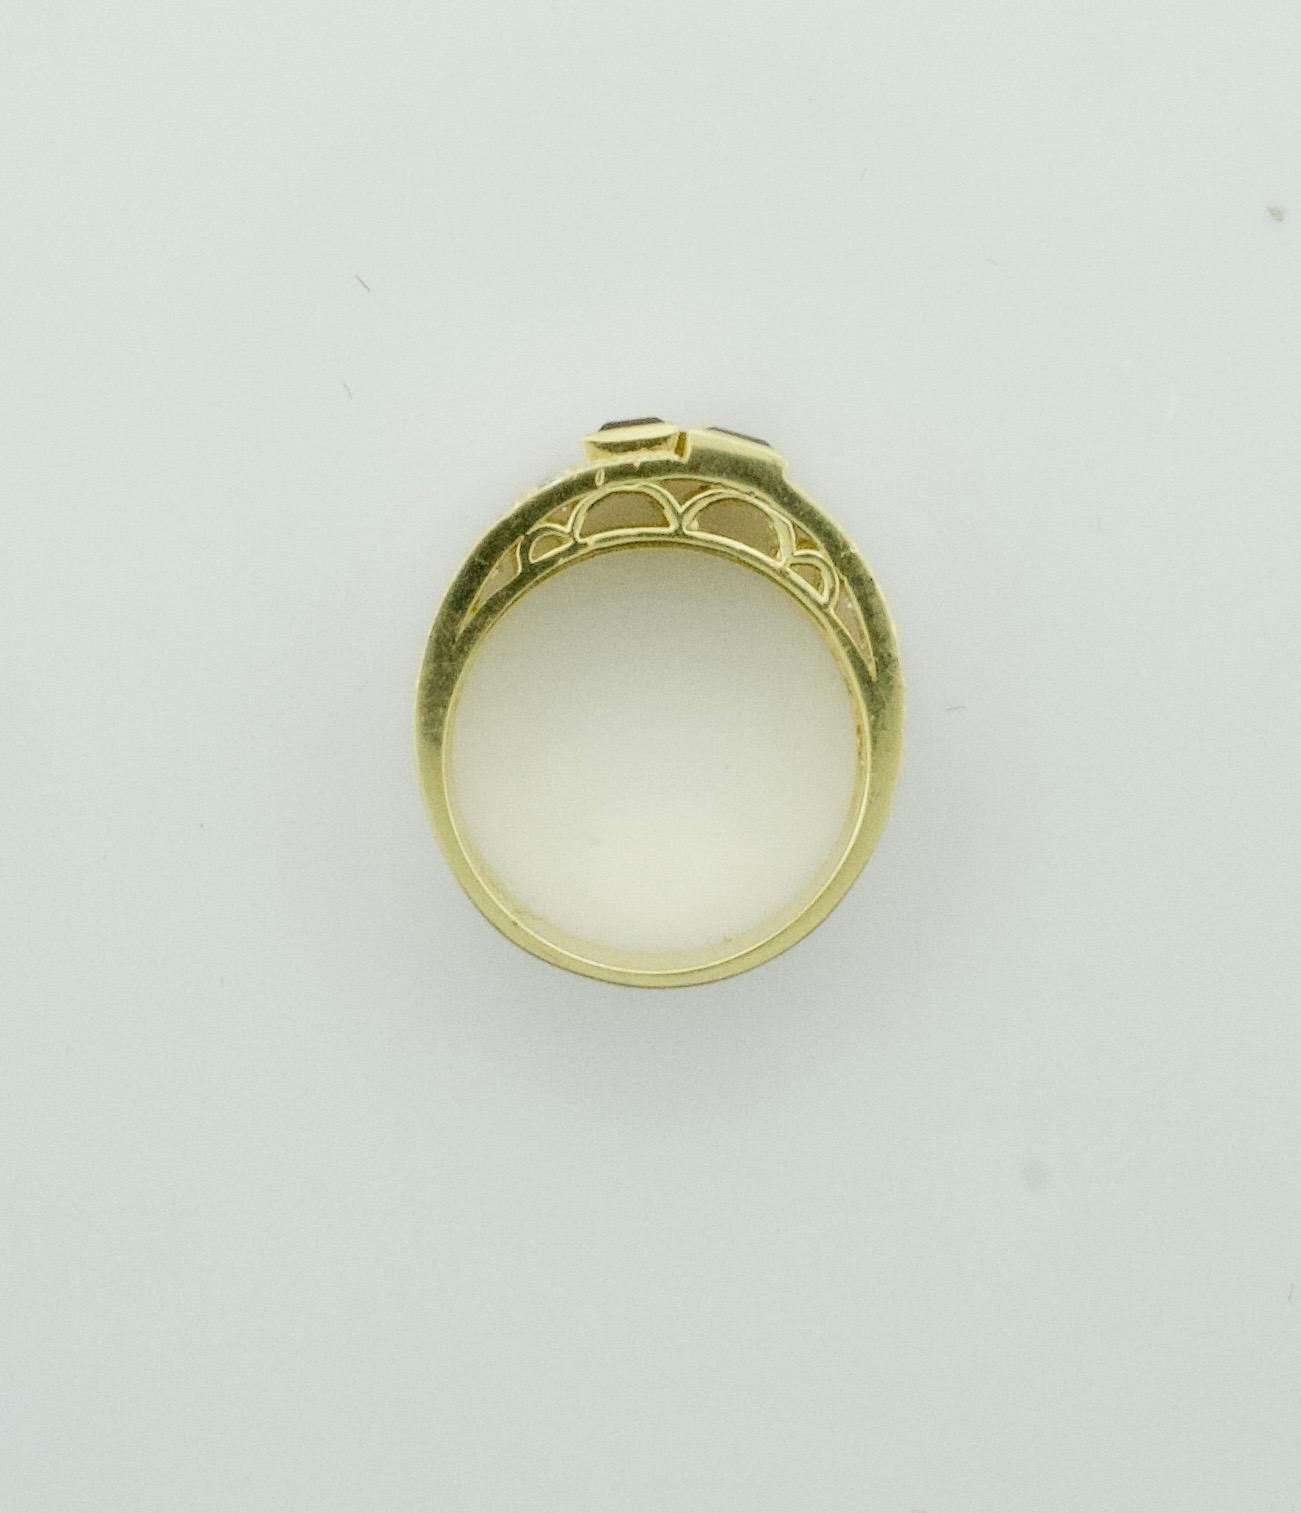 Exquisiter Diamant- und Rubin-Ehering aus 18 Karat, ein zeitloses Symbol der Liebe und des Engagements, das mit viel Liebe zum Detail gefertigt wurde. Dieser atemberaubende Ring ist mit zweiundvierzig runden Diamanten im Brillantschliff besetzt, die